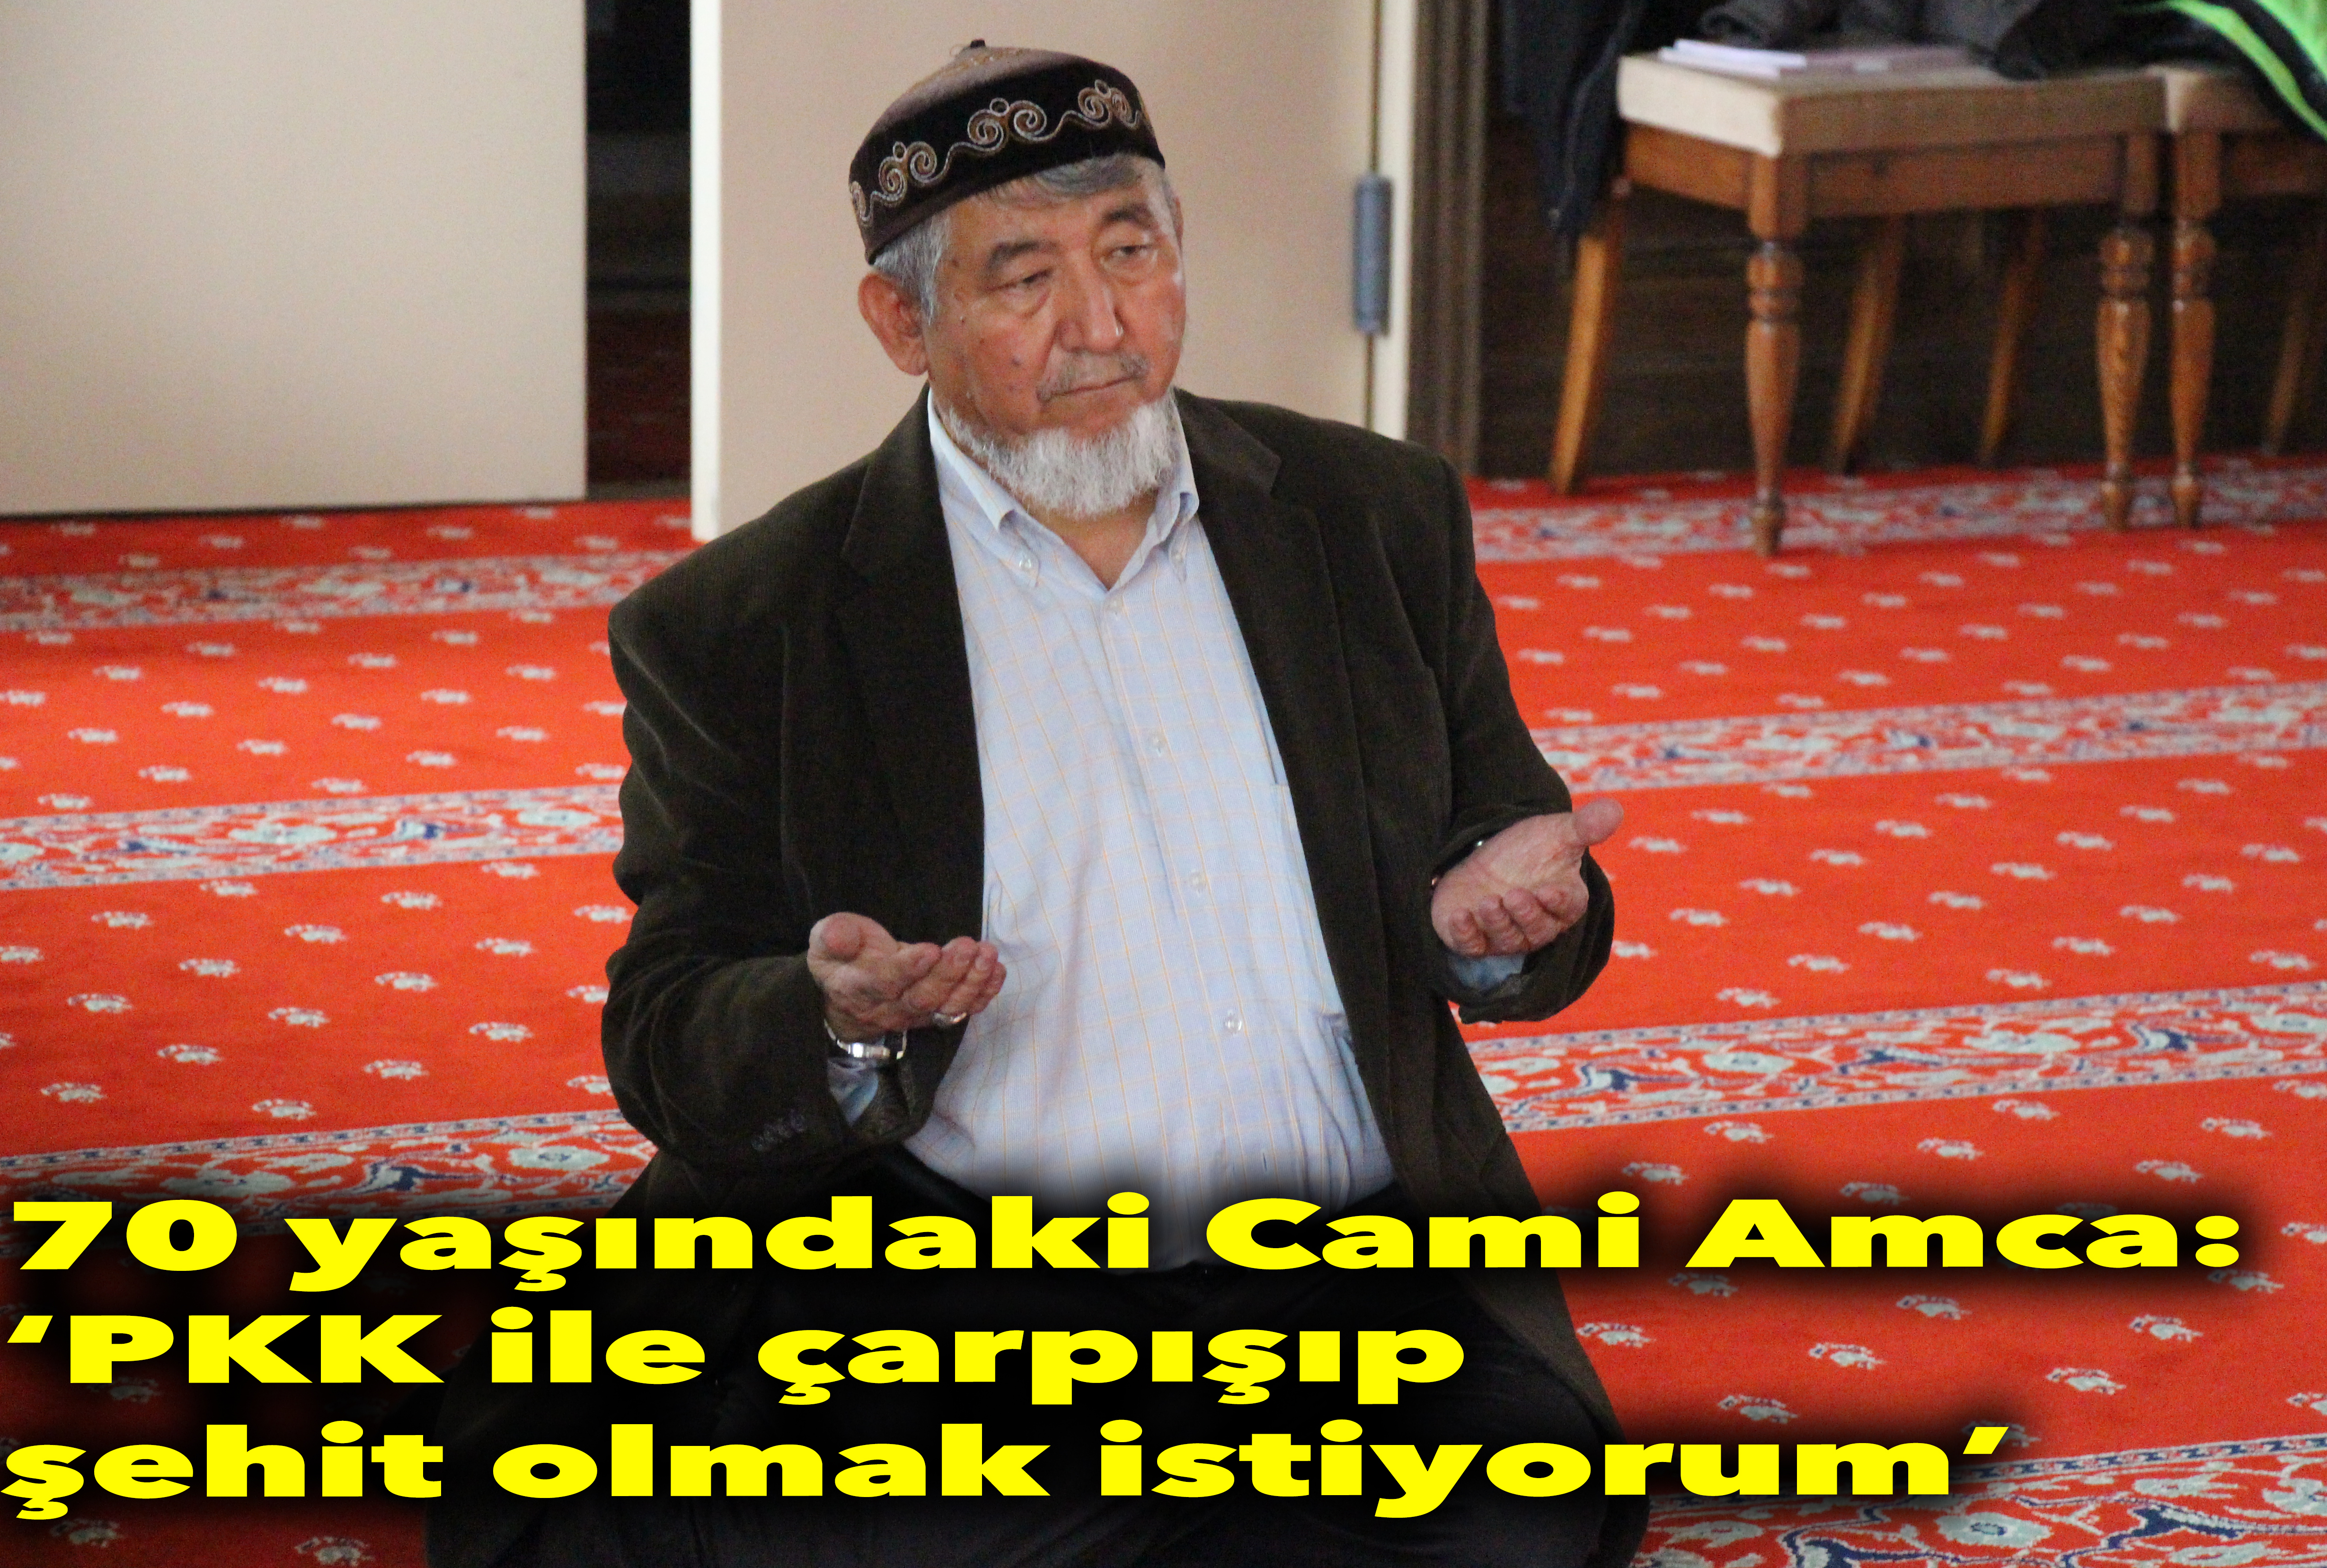 Cami Amca, PKK ile çarpışıp şehit olmak istiyor!